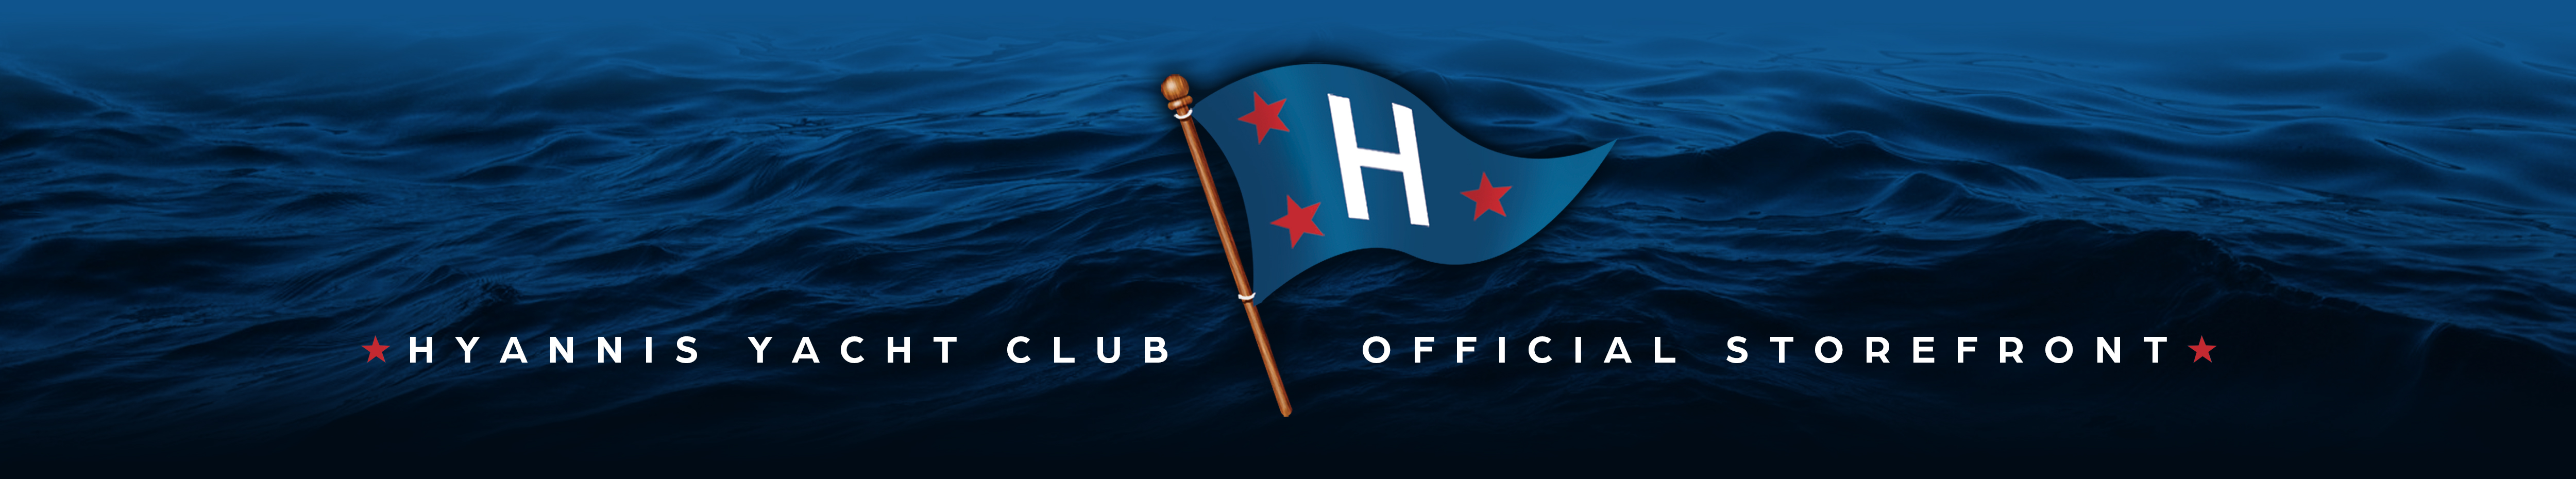 hyannis yacht club flag